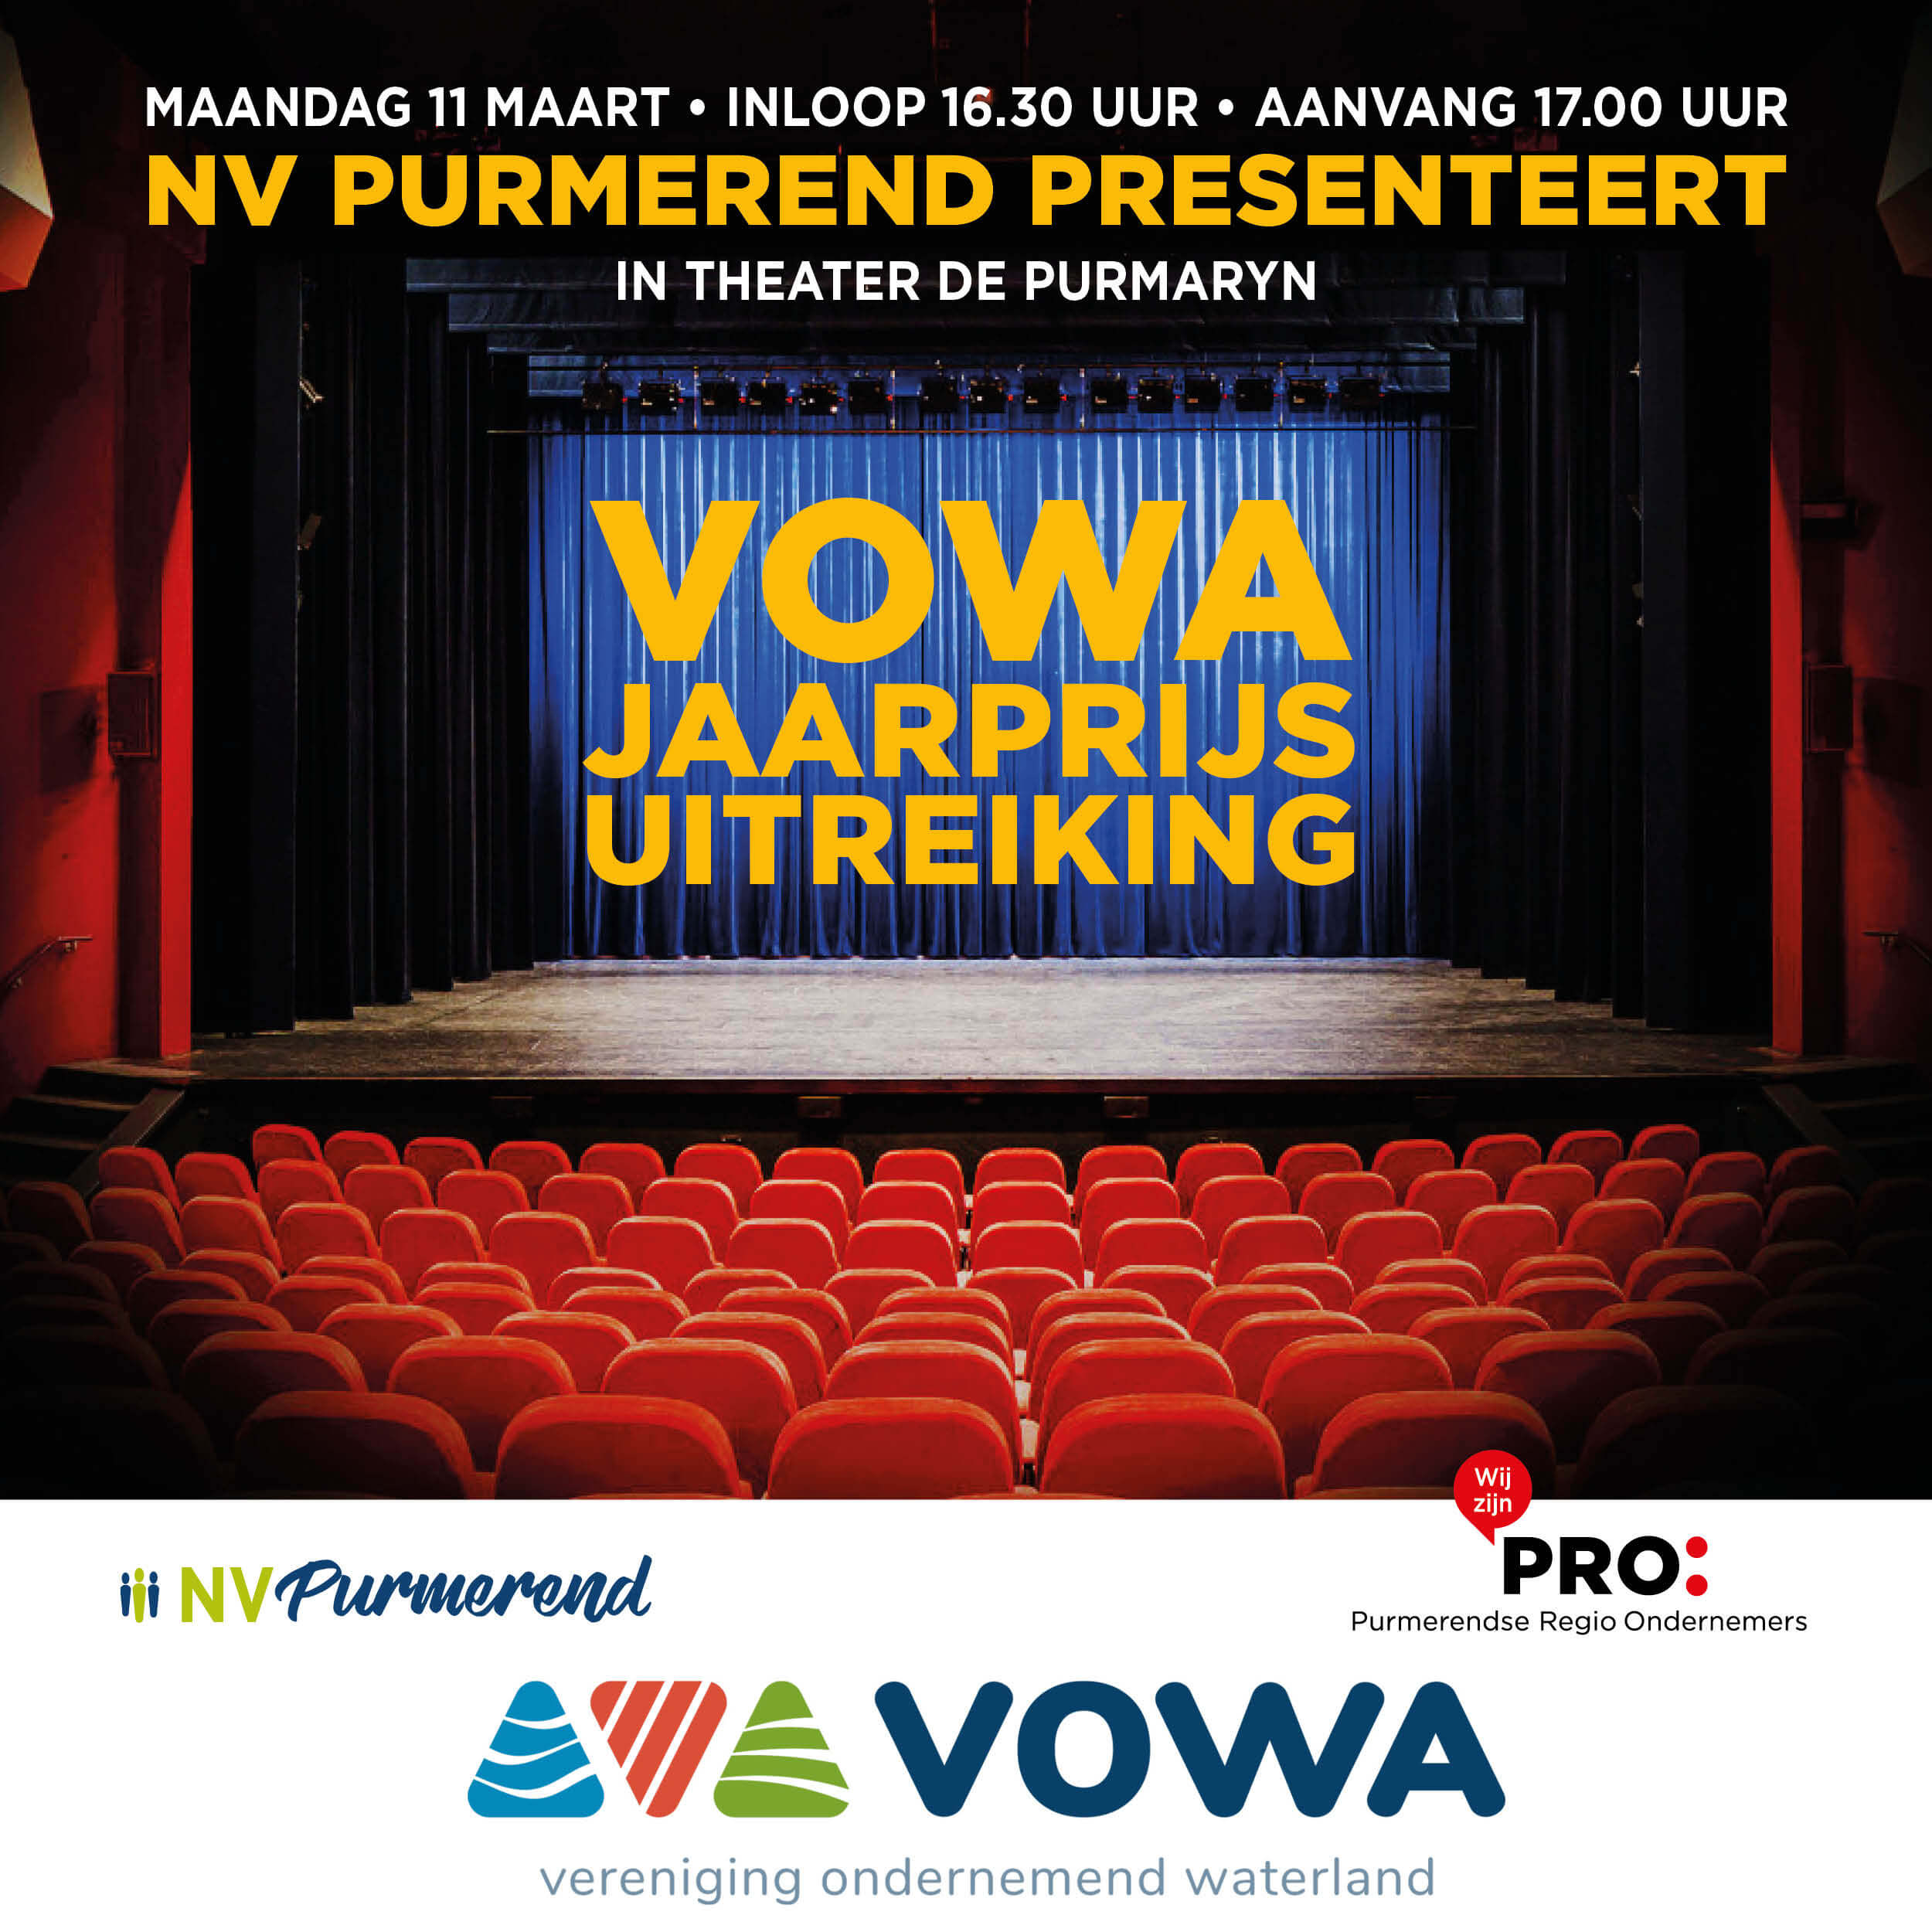 VOWA-jaarprijs powered by NV Purmerend